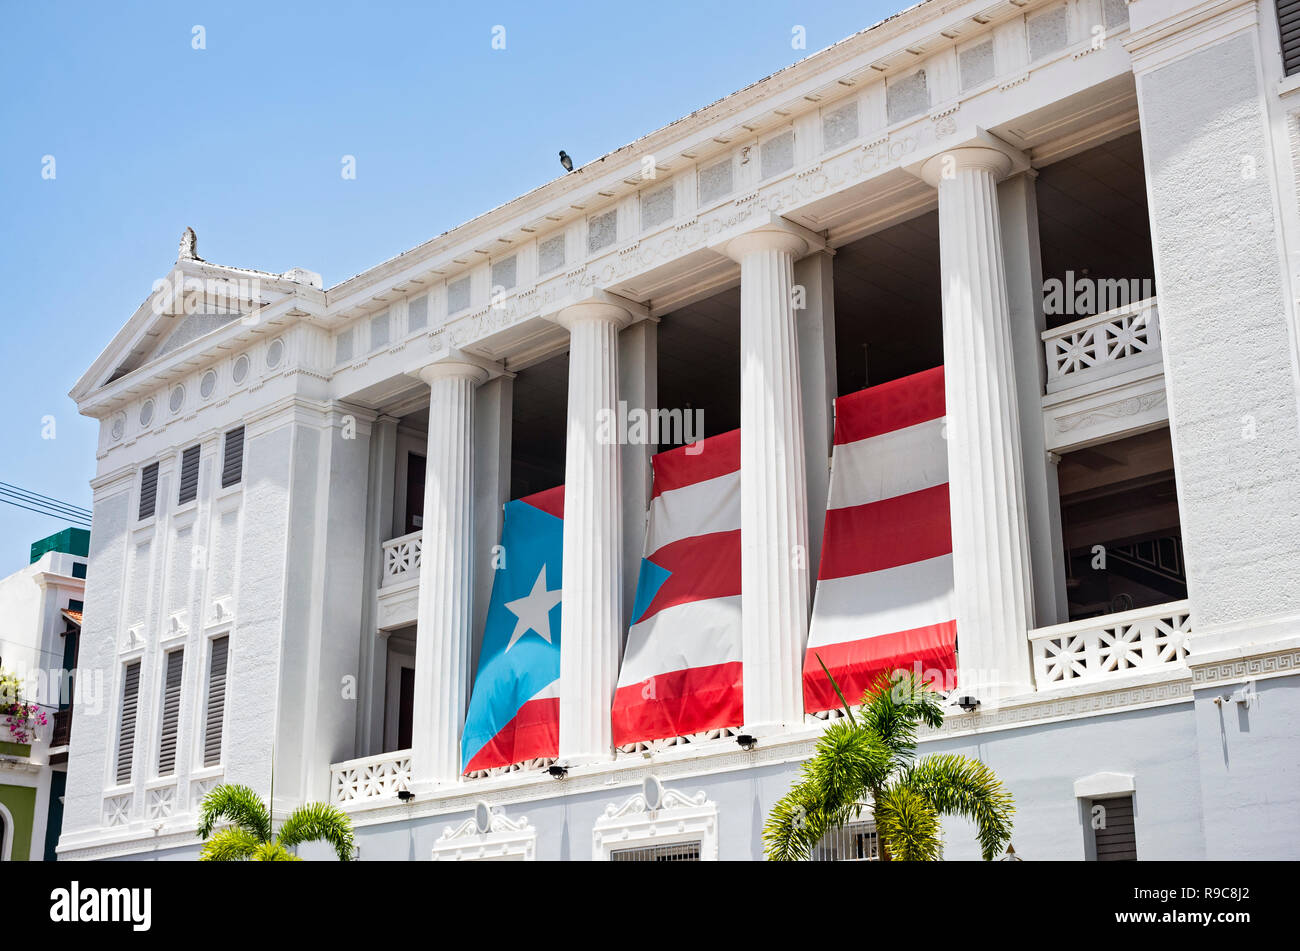 San Juan, Porto Rico - 4 Agosto 2018: Albizu University di San Juan è il primo acquirente indipendente della scuola professionale di psicologia in Nord America. Foto Stock